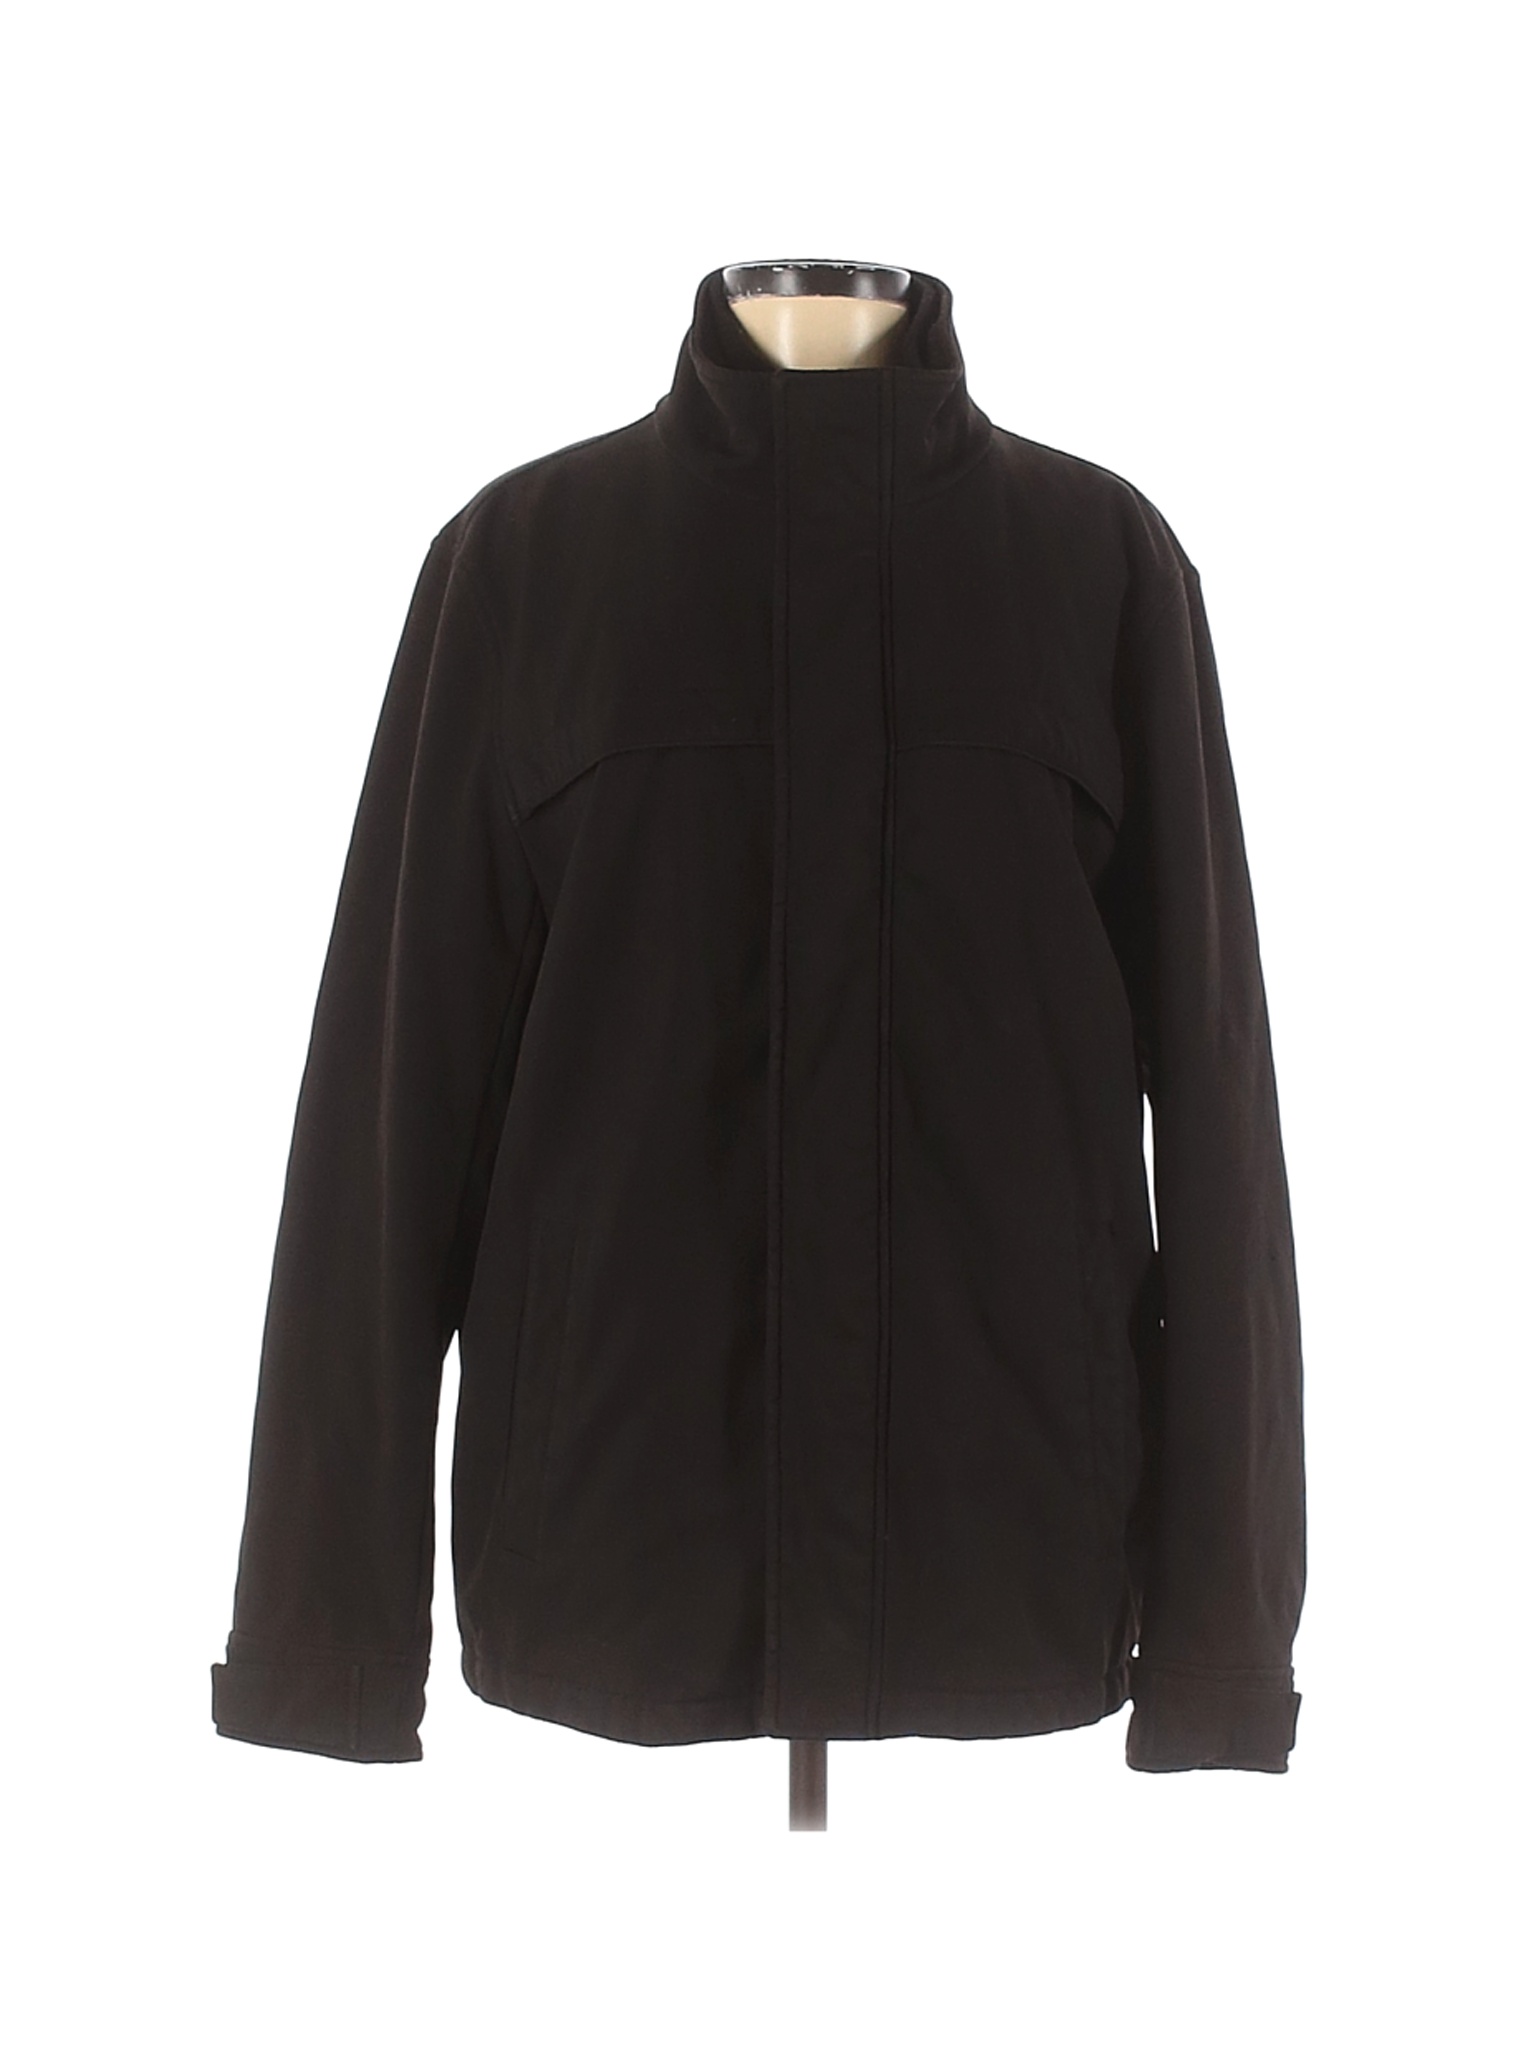 Dockers Women Black Coat M | eBay